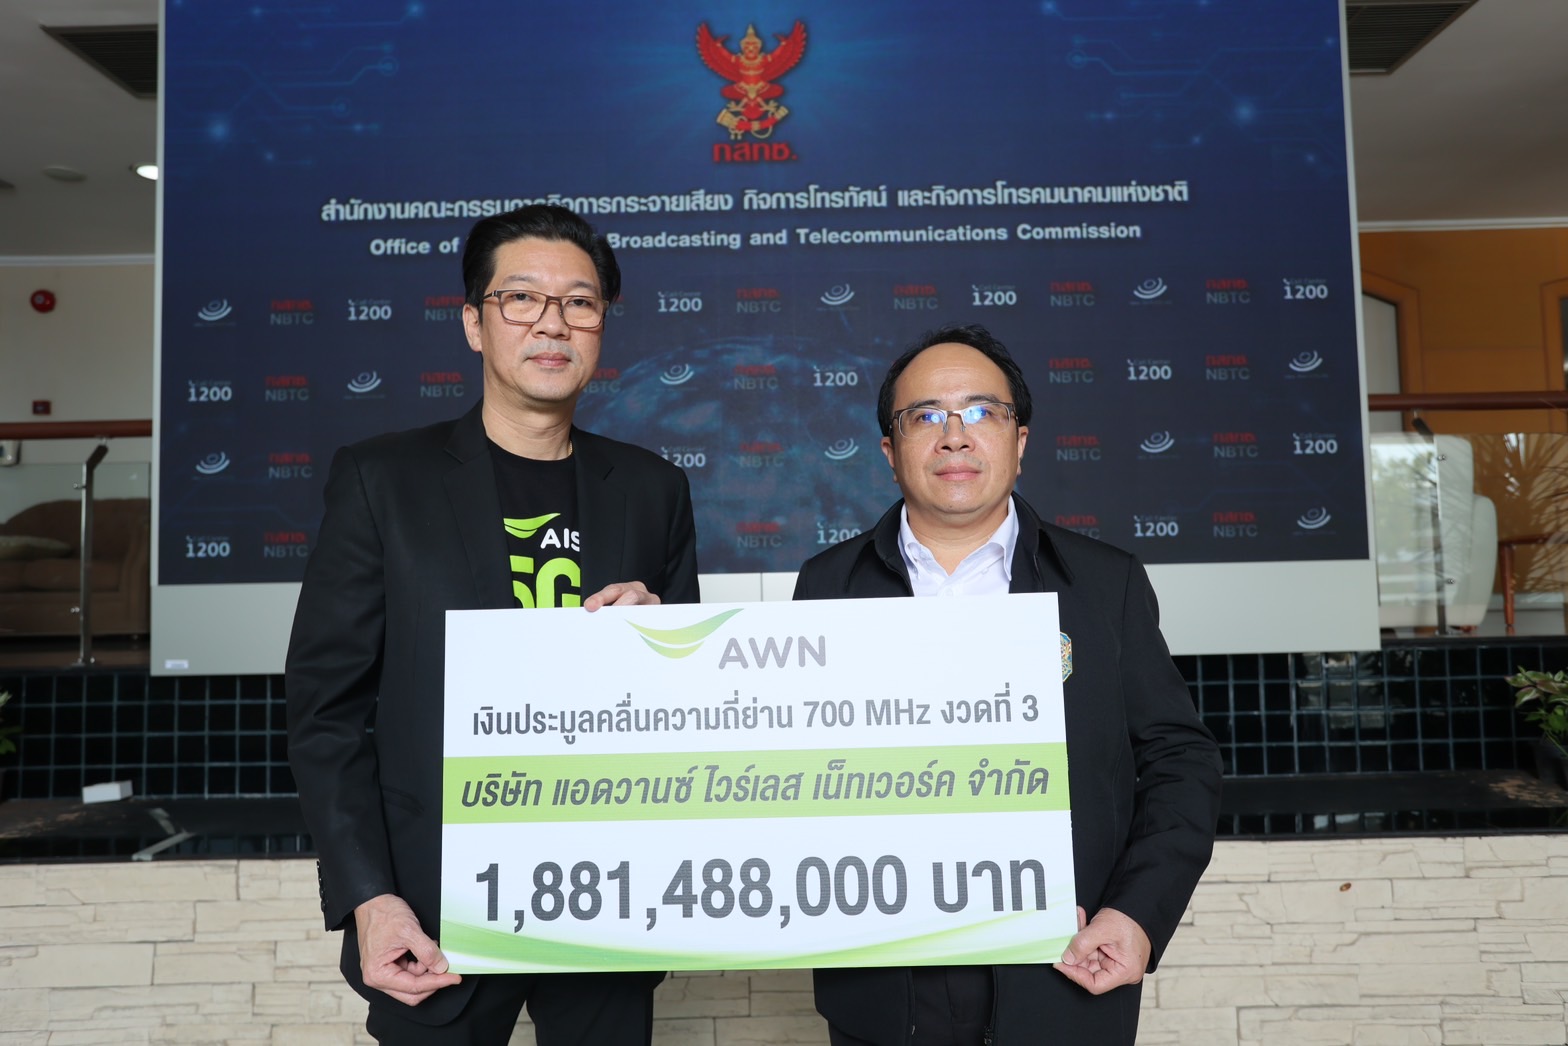 ชำระค่าใบอนุญาตแล้ว ! AIS ตอกย้อความเป็นผู้บริการ 5G ถือครองคลื่นความถี่มากที่สุด ครบที่สุดในไทยเดินหน้ายกระดับการบริการ